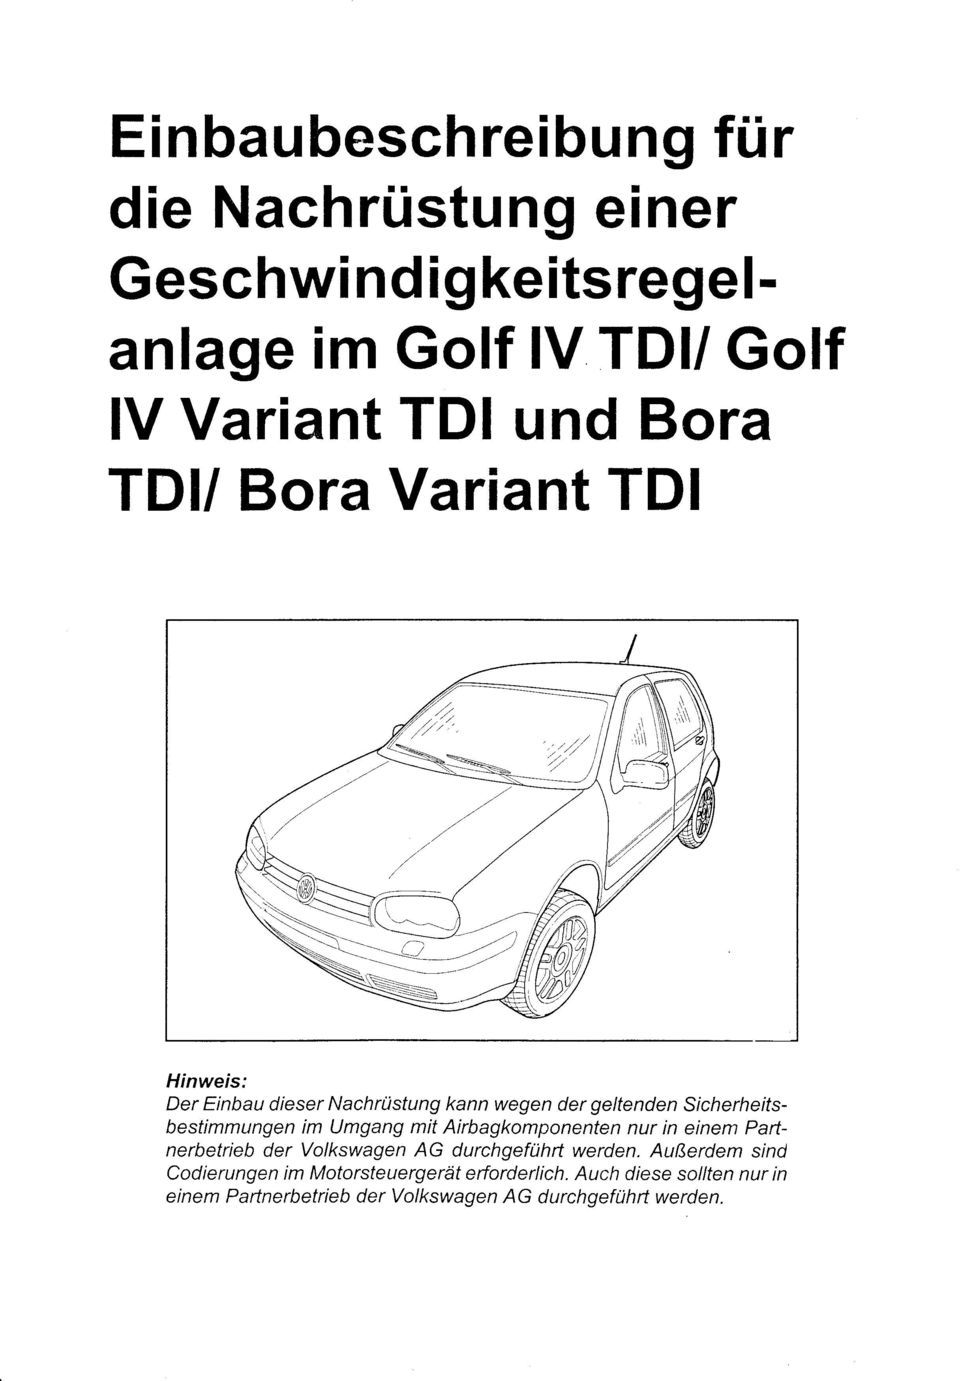 im Umgang mit Airbagkomponenten nur in einem Paftnerbetrieb der Volkswagen AG durchgeführt werden.